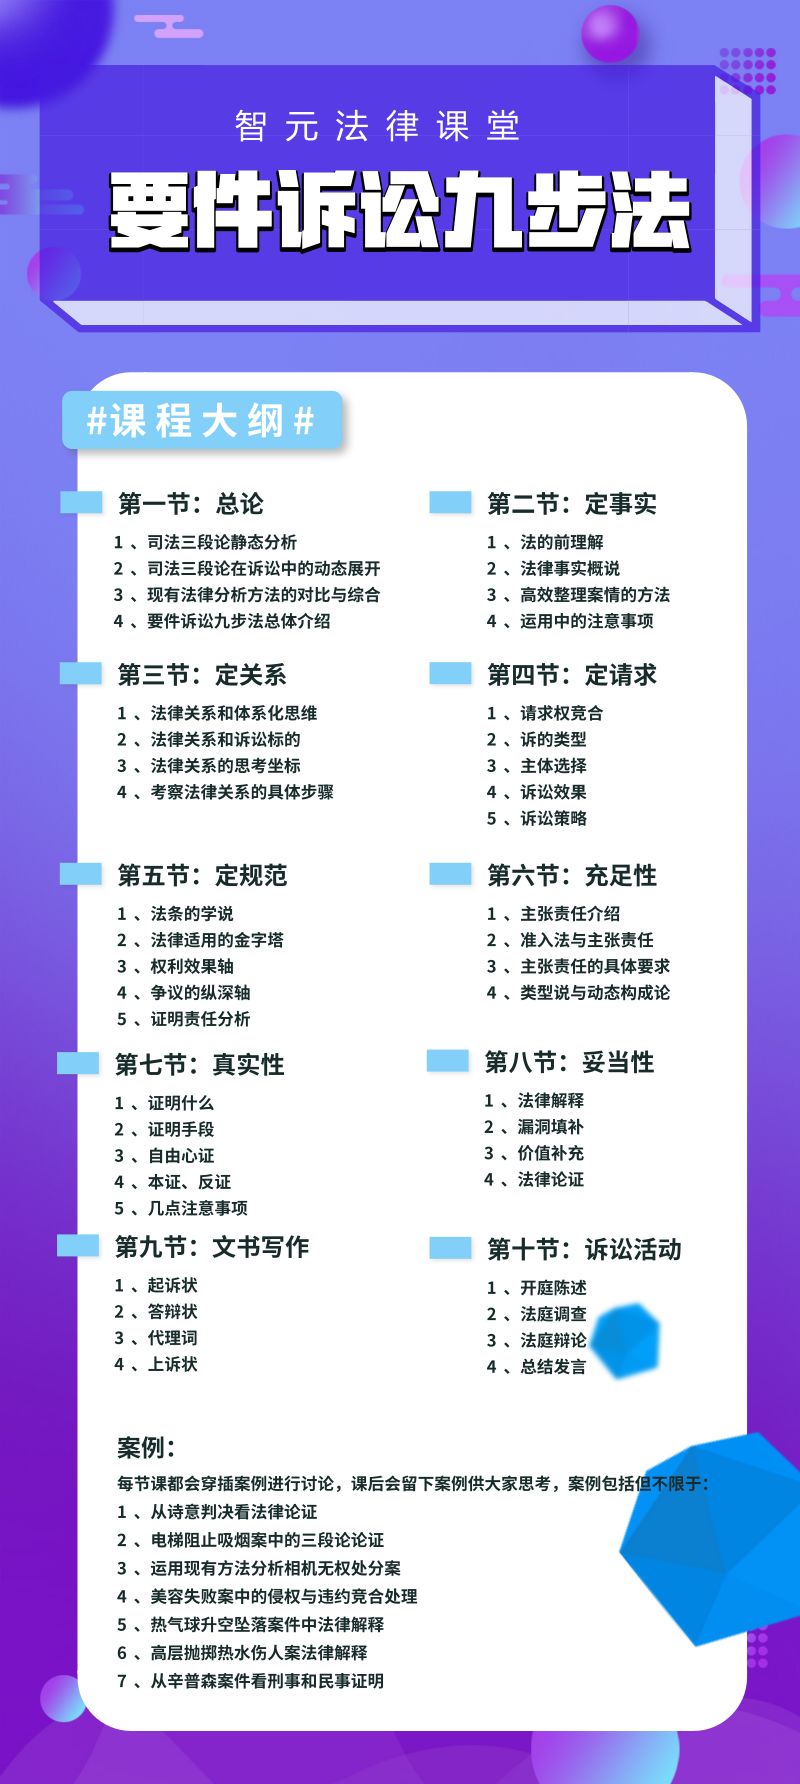 九师招聘_重庆市事业编教师考试报名流程 报名照片要求及处理方法(5)